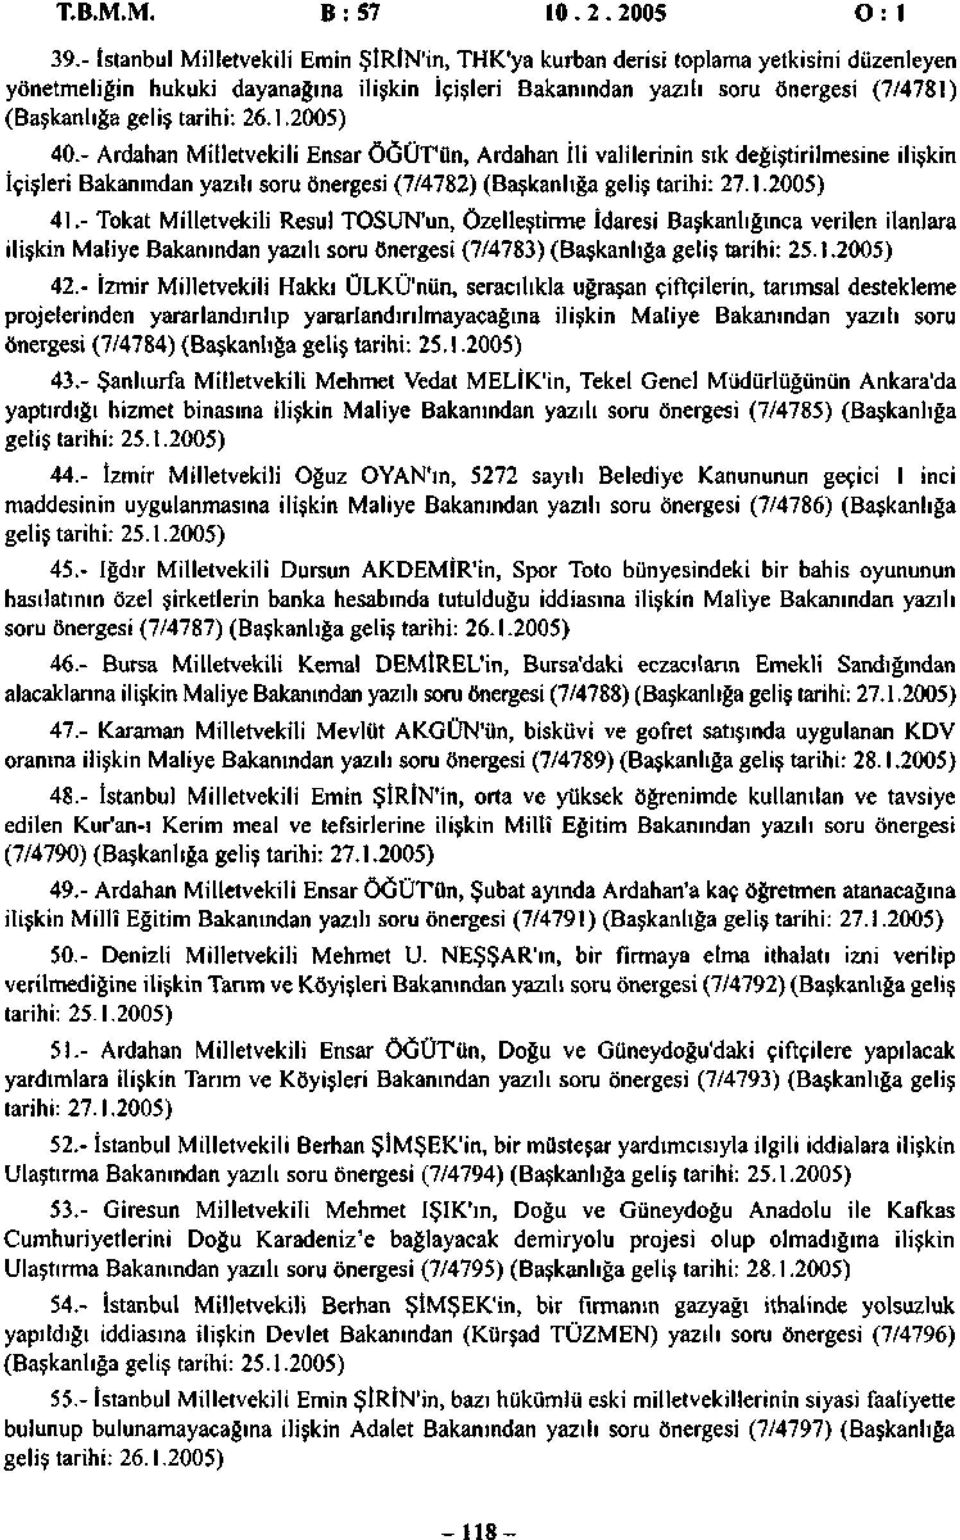 tarihi: 26.1.2005) 40.- Ardahan Milletvekili Ensar ÖĞÜT'ün, Ardahan İli valilerinin sık değiştirilmesine ilişkin İçişleri Bakanından yazılı soru önergesi (7/4782) (Başkanlığa geliş tarihi: 27.1.2005) 41.